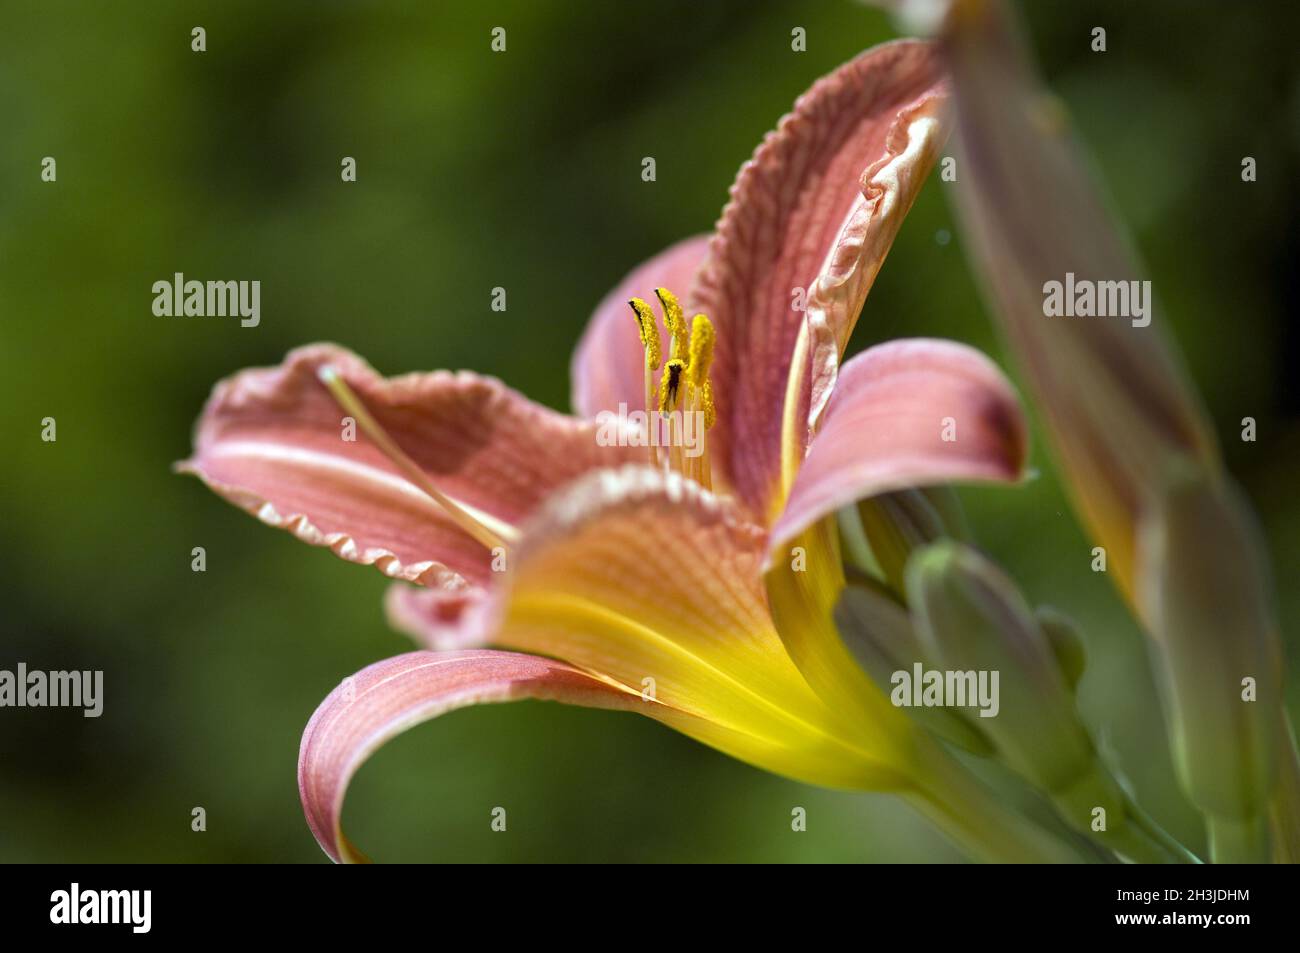 Marigolds, Hemerocallis, Stock Photo